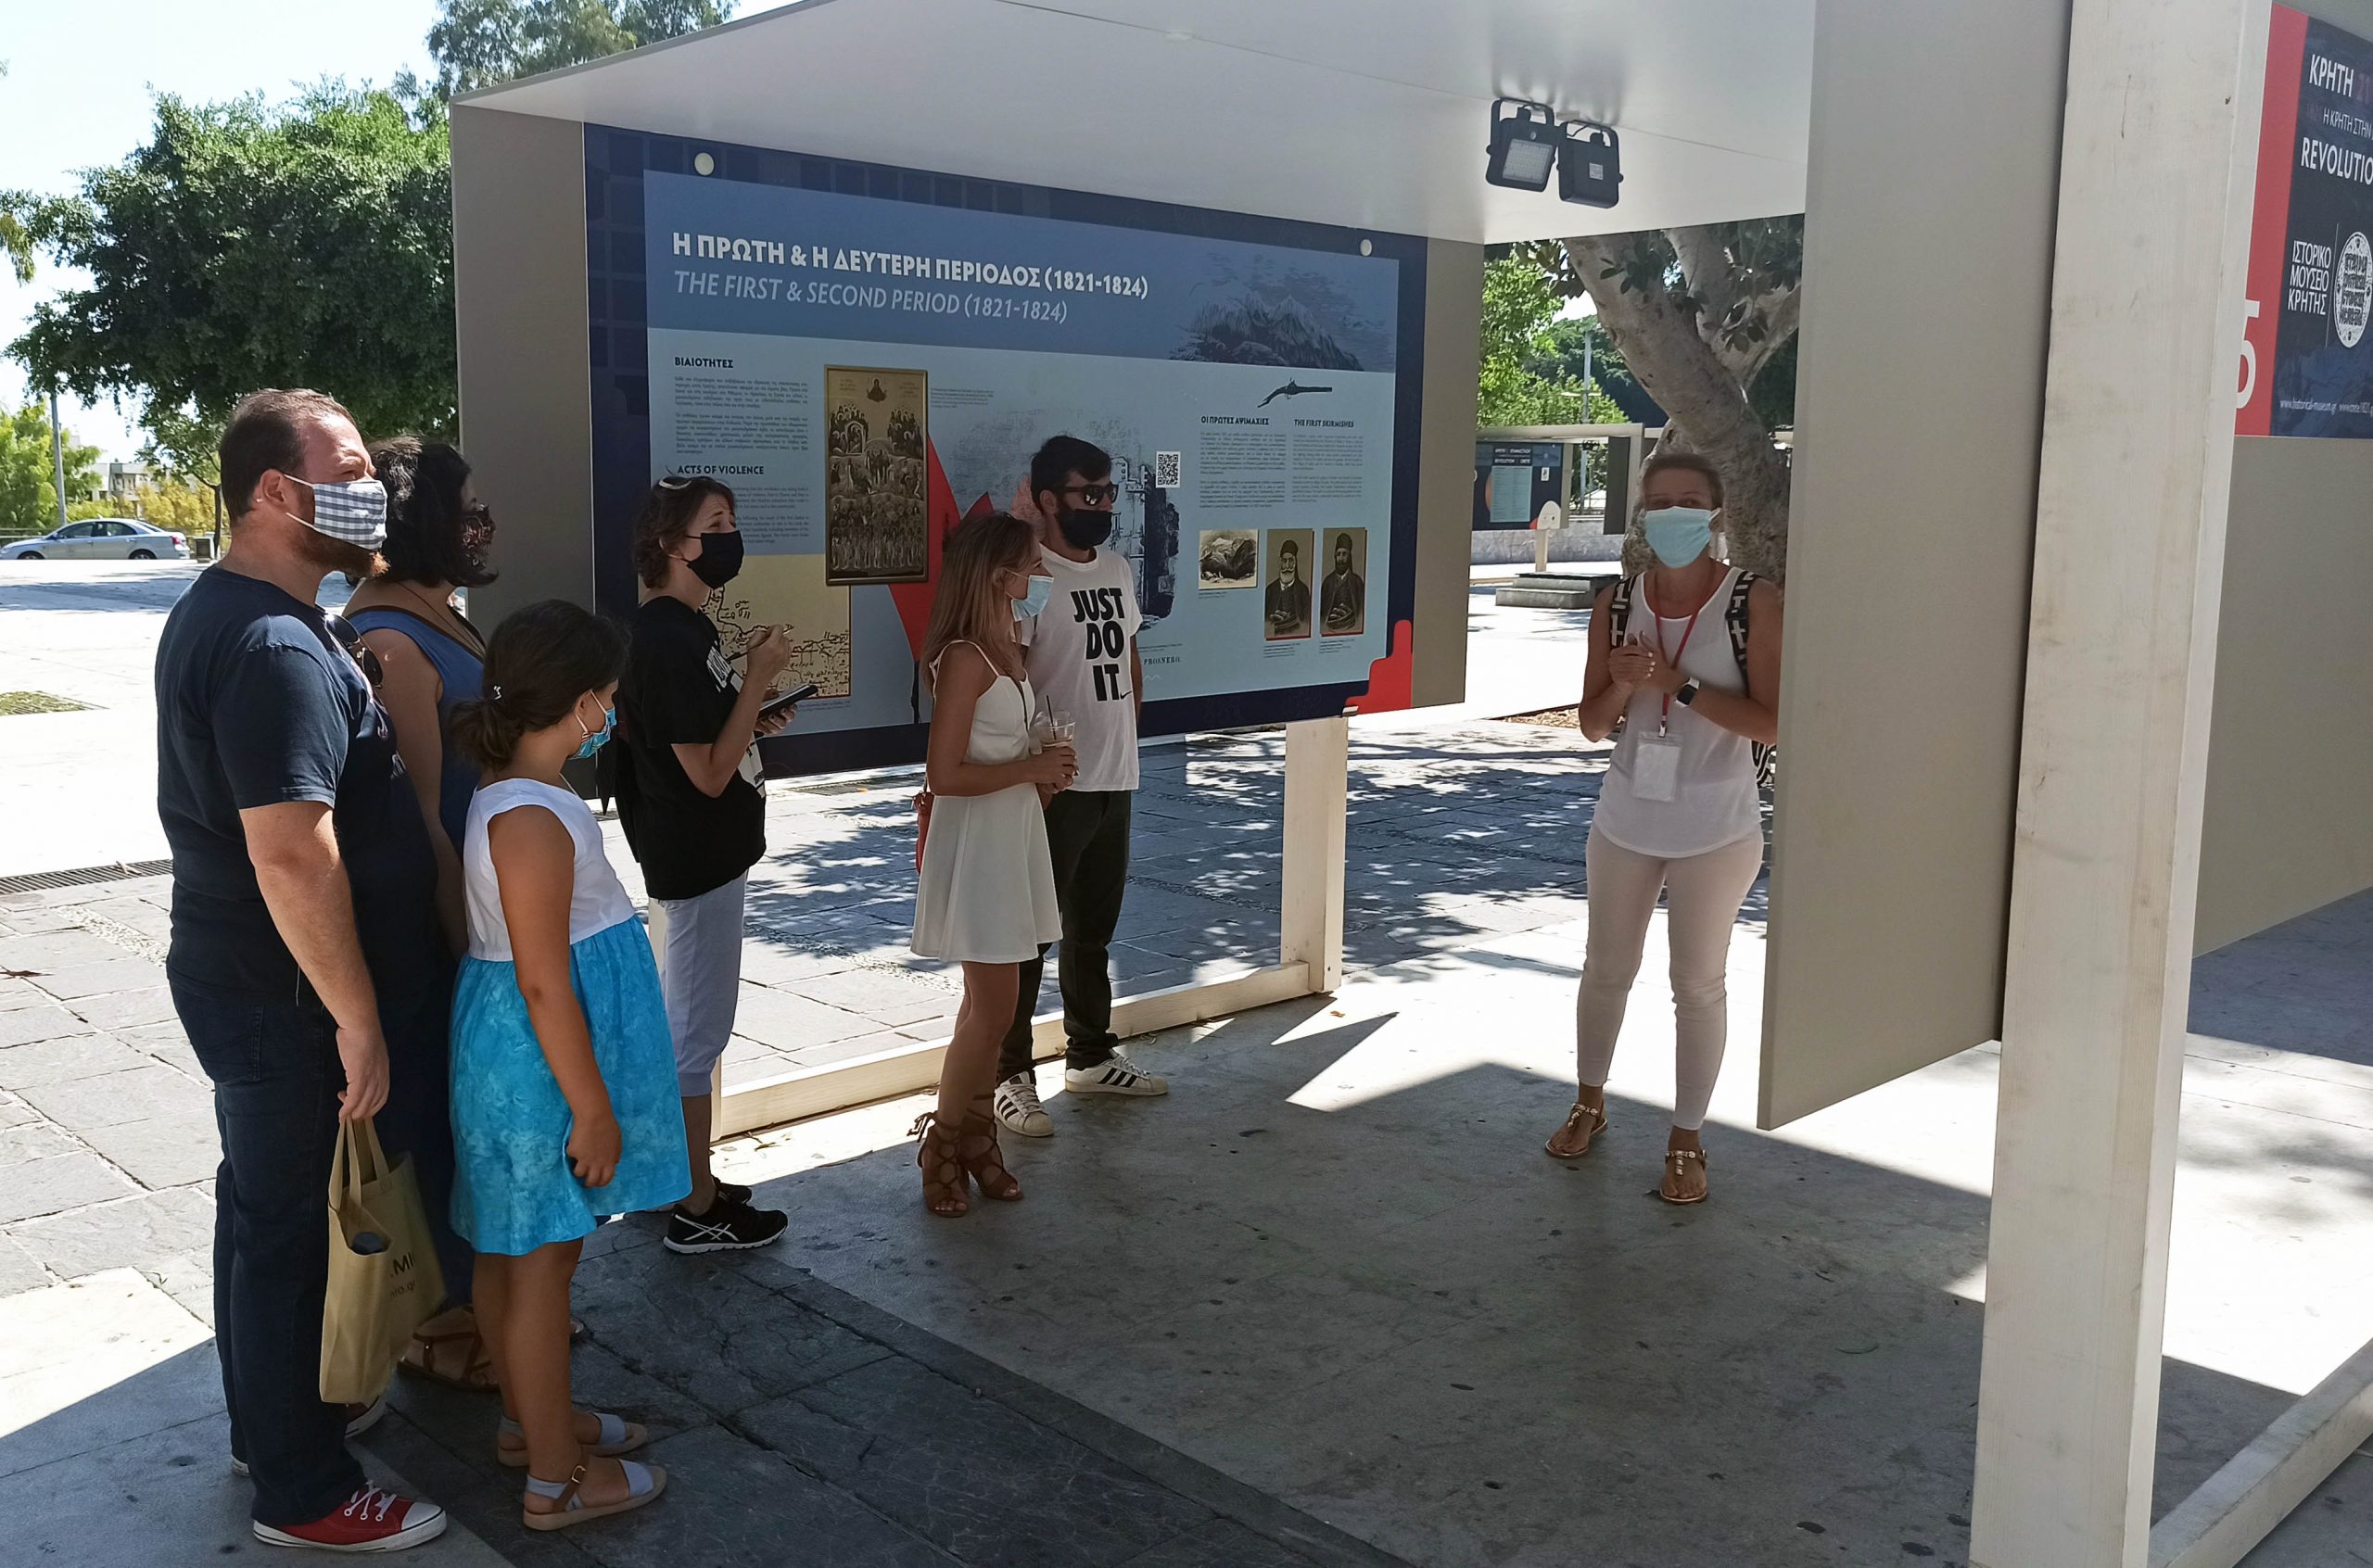 Εκπαιδευτικές ξεναγήσεις για σχολεία στην επετειακή έκθεση του Ιστορικού Μουσείου Κρήτης